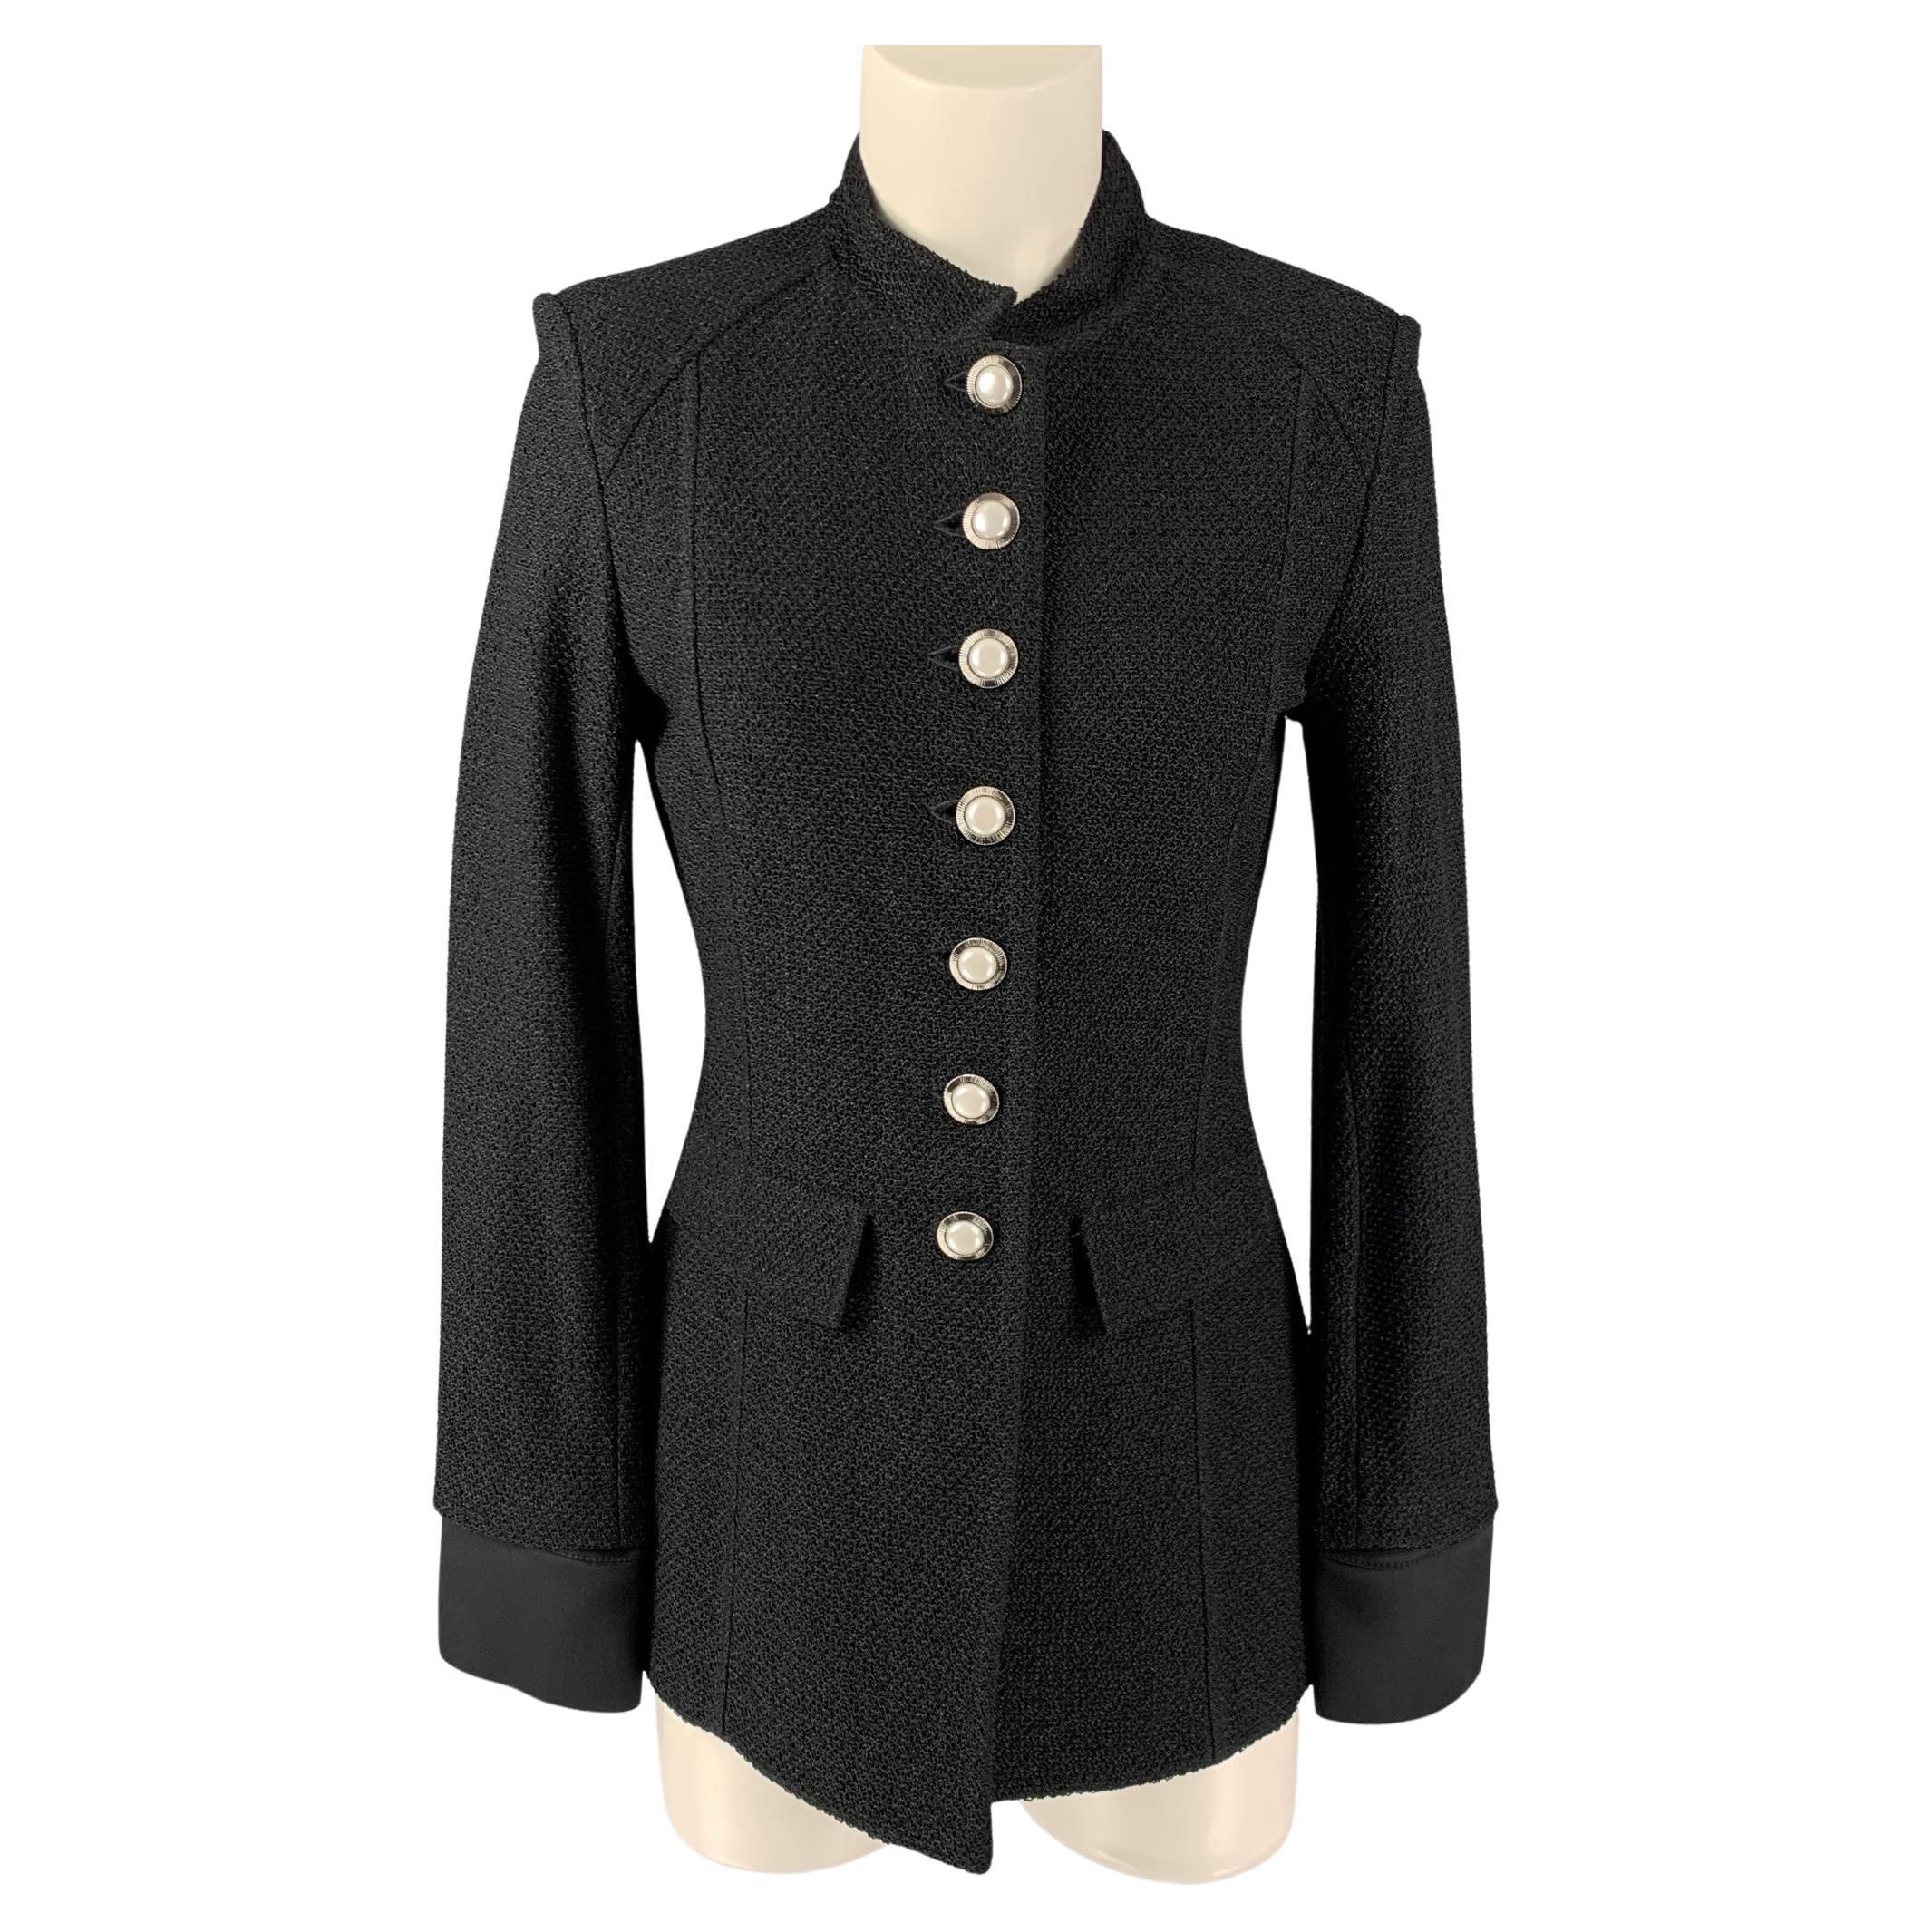 ST. JOHN Size 6 Black Wool Blend Textured Jacket